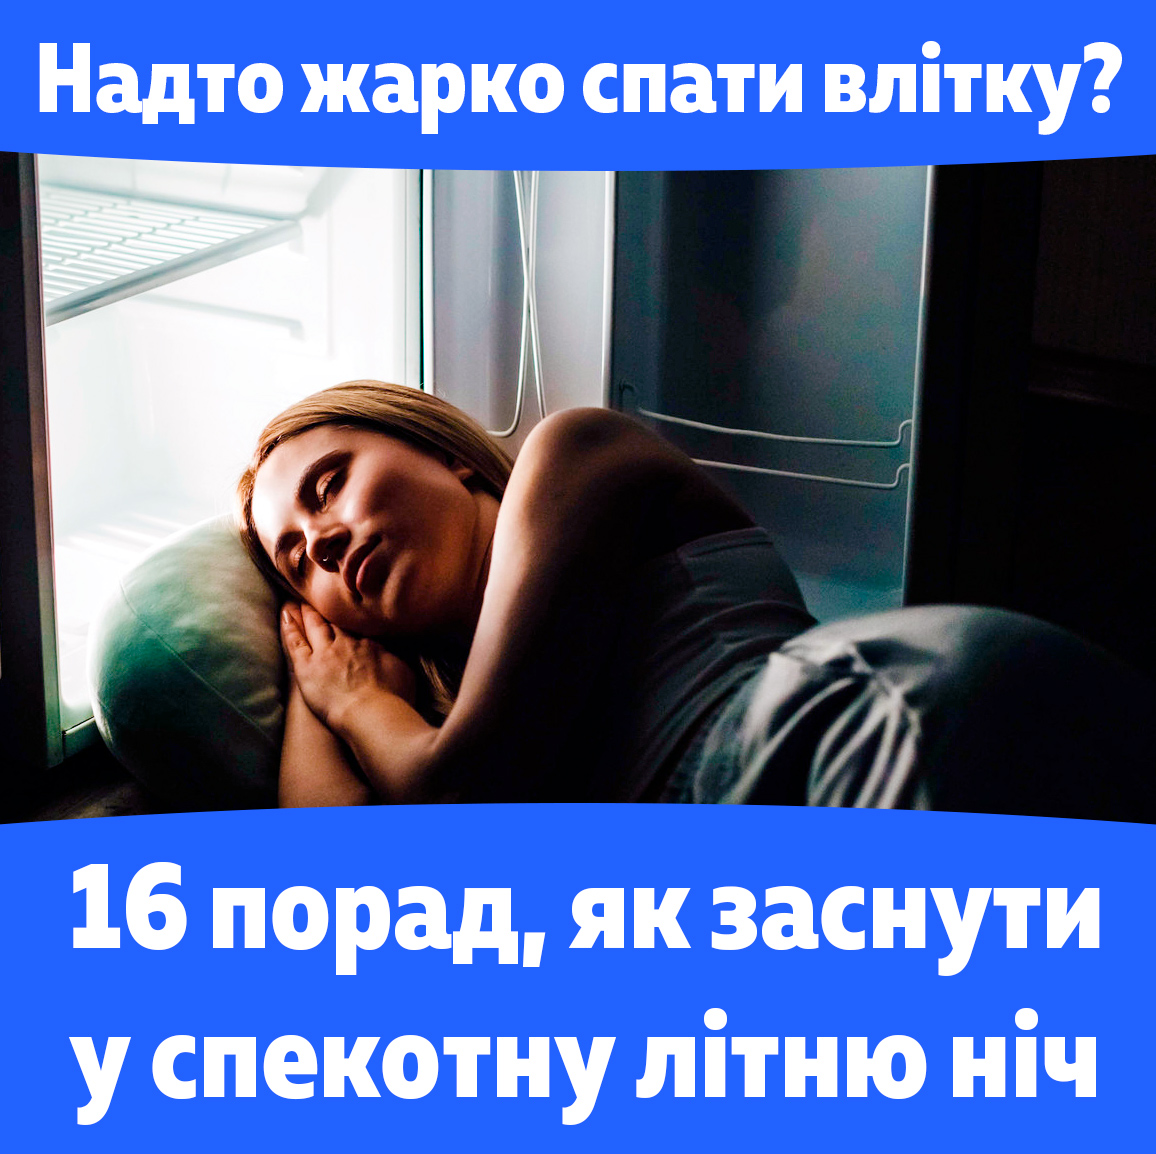 Рекомендации советы как уснуть в жару в даркую летнюю ночь, жарко спать. Девушка спит головой в холодильнике.